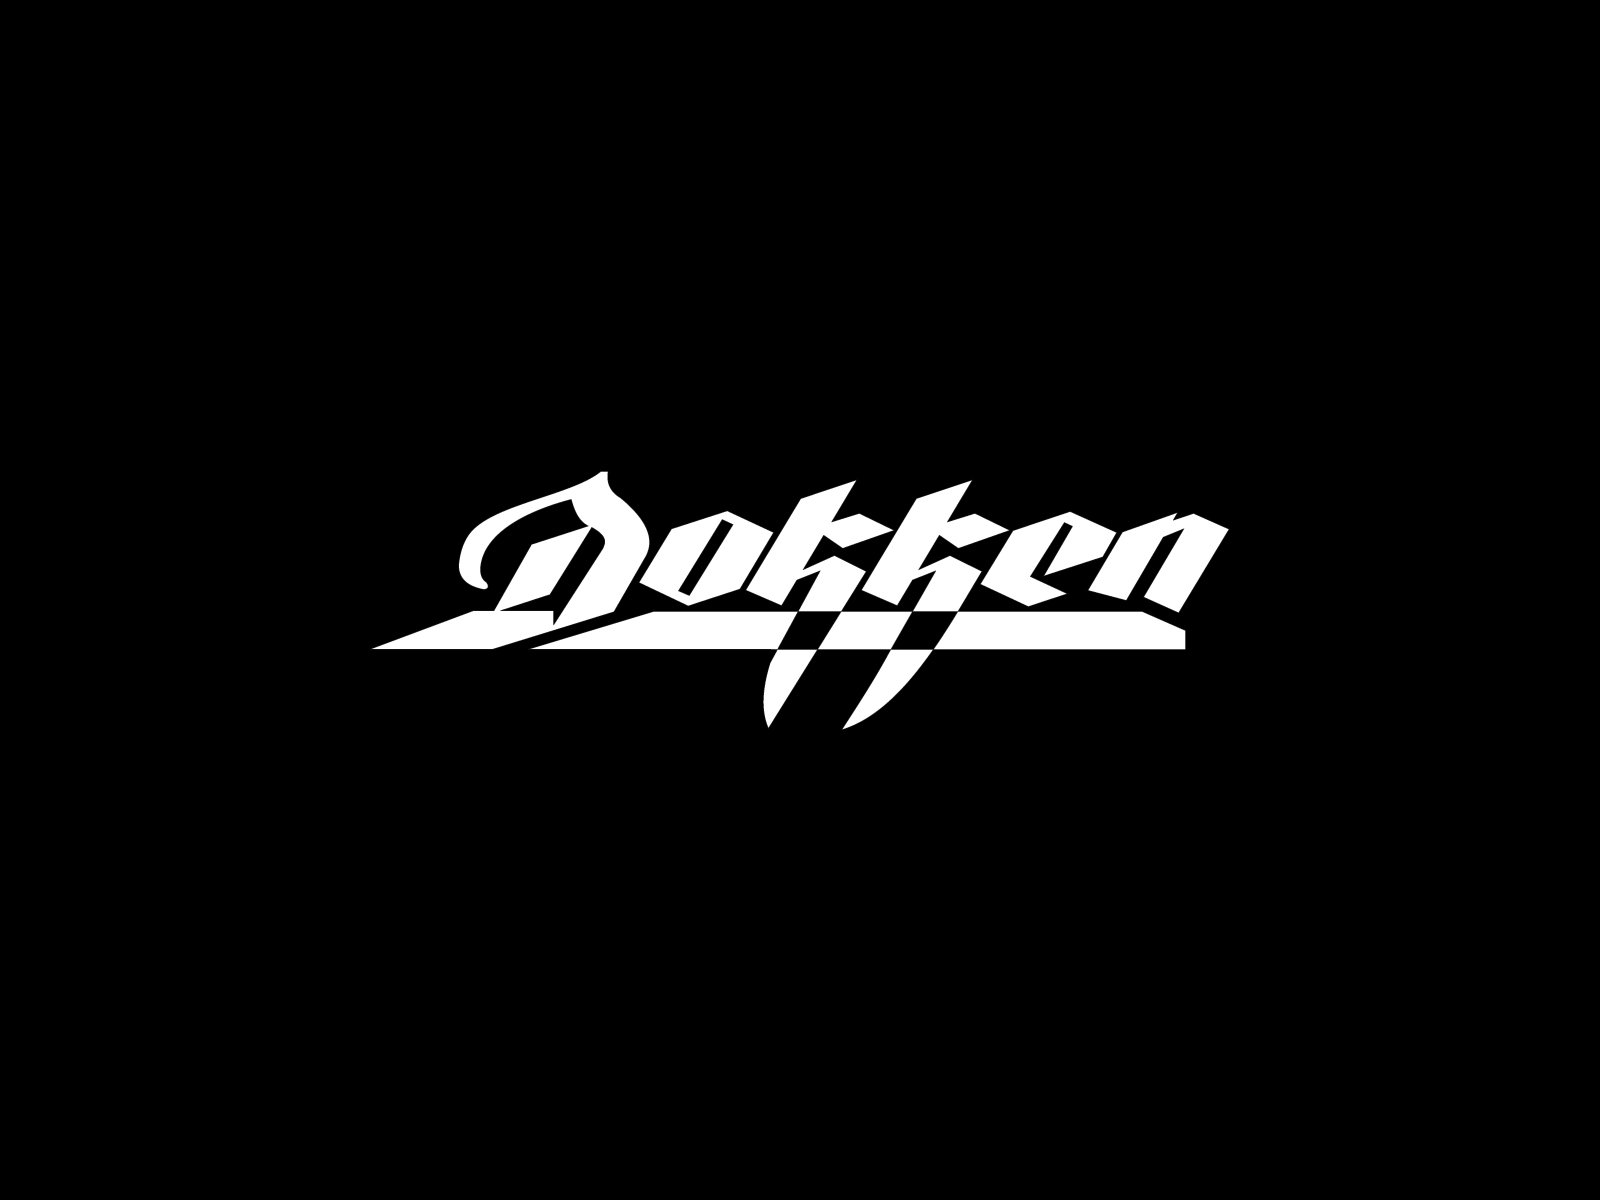 Dokken HD Wallpaper Background Image